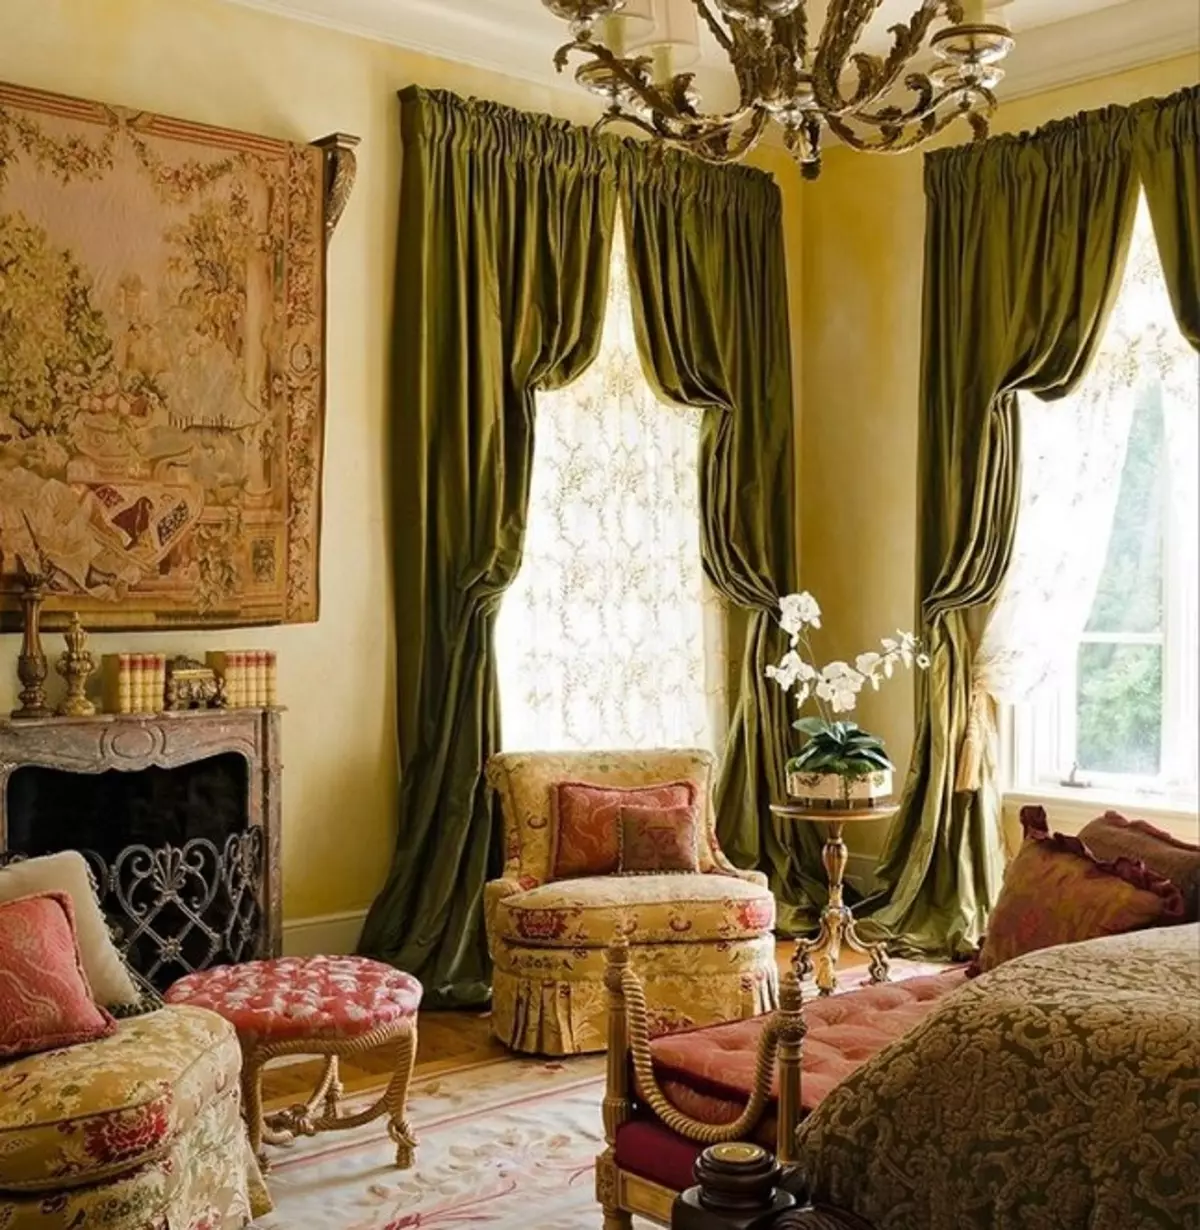 绿色窗帘在客厅内部（51张照片）：绿色窗帘设计在大厅里。内部深绿色和其他色调的窗帘 9790_38